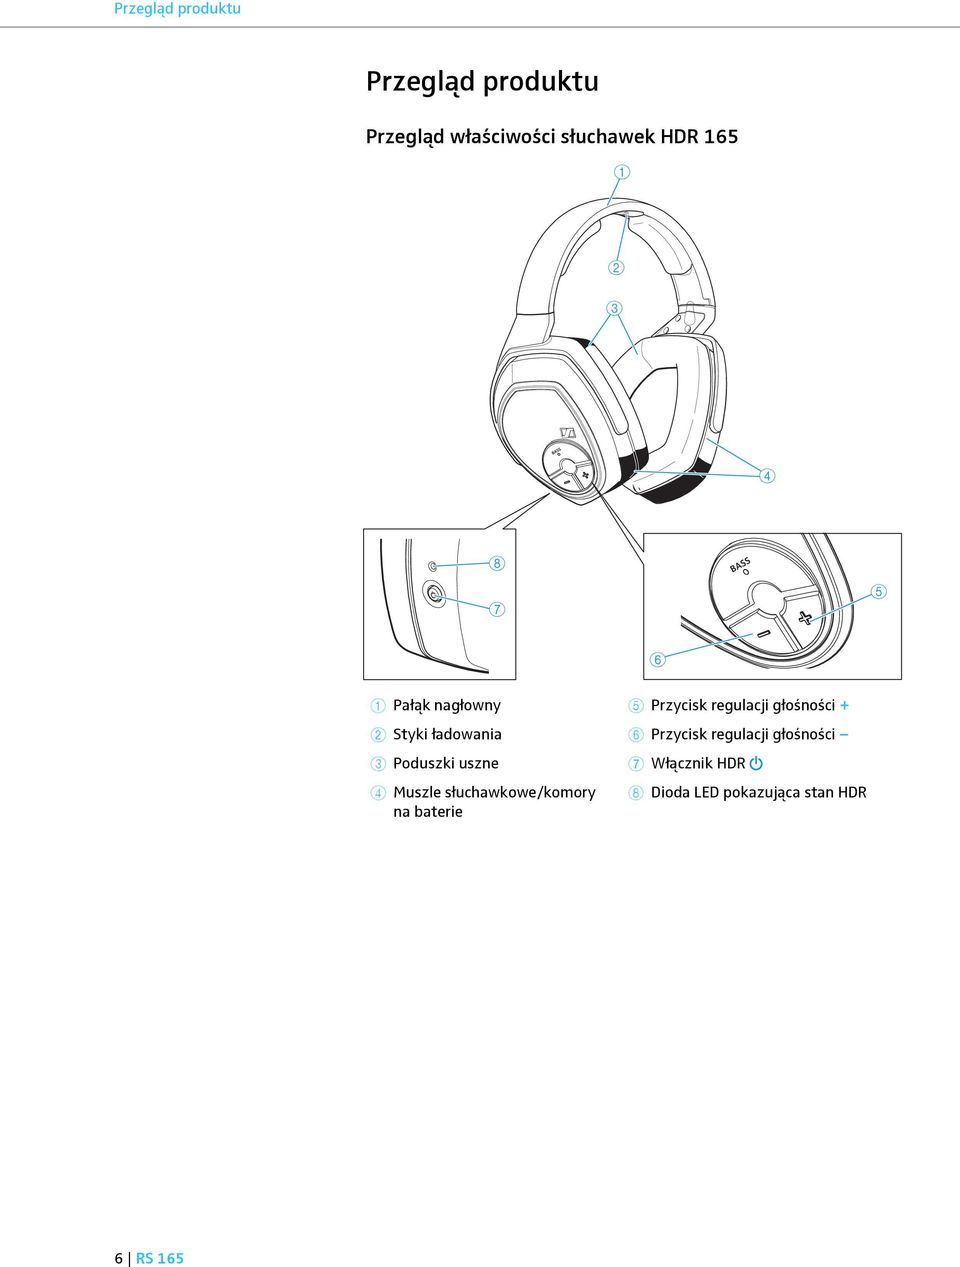 Muszle słuchawkowe/komory na baterie 5 Przycisk regulacji głośności + 6